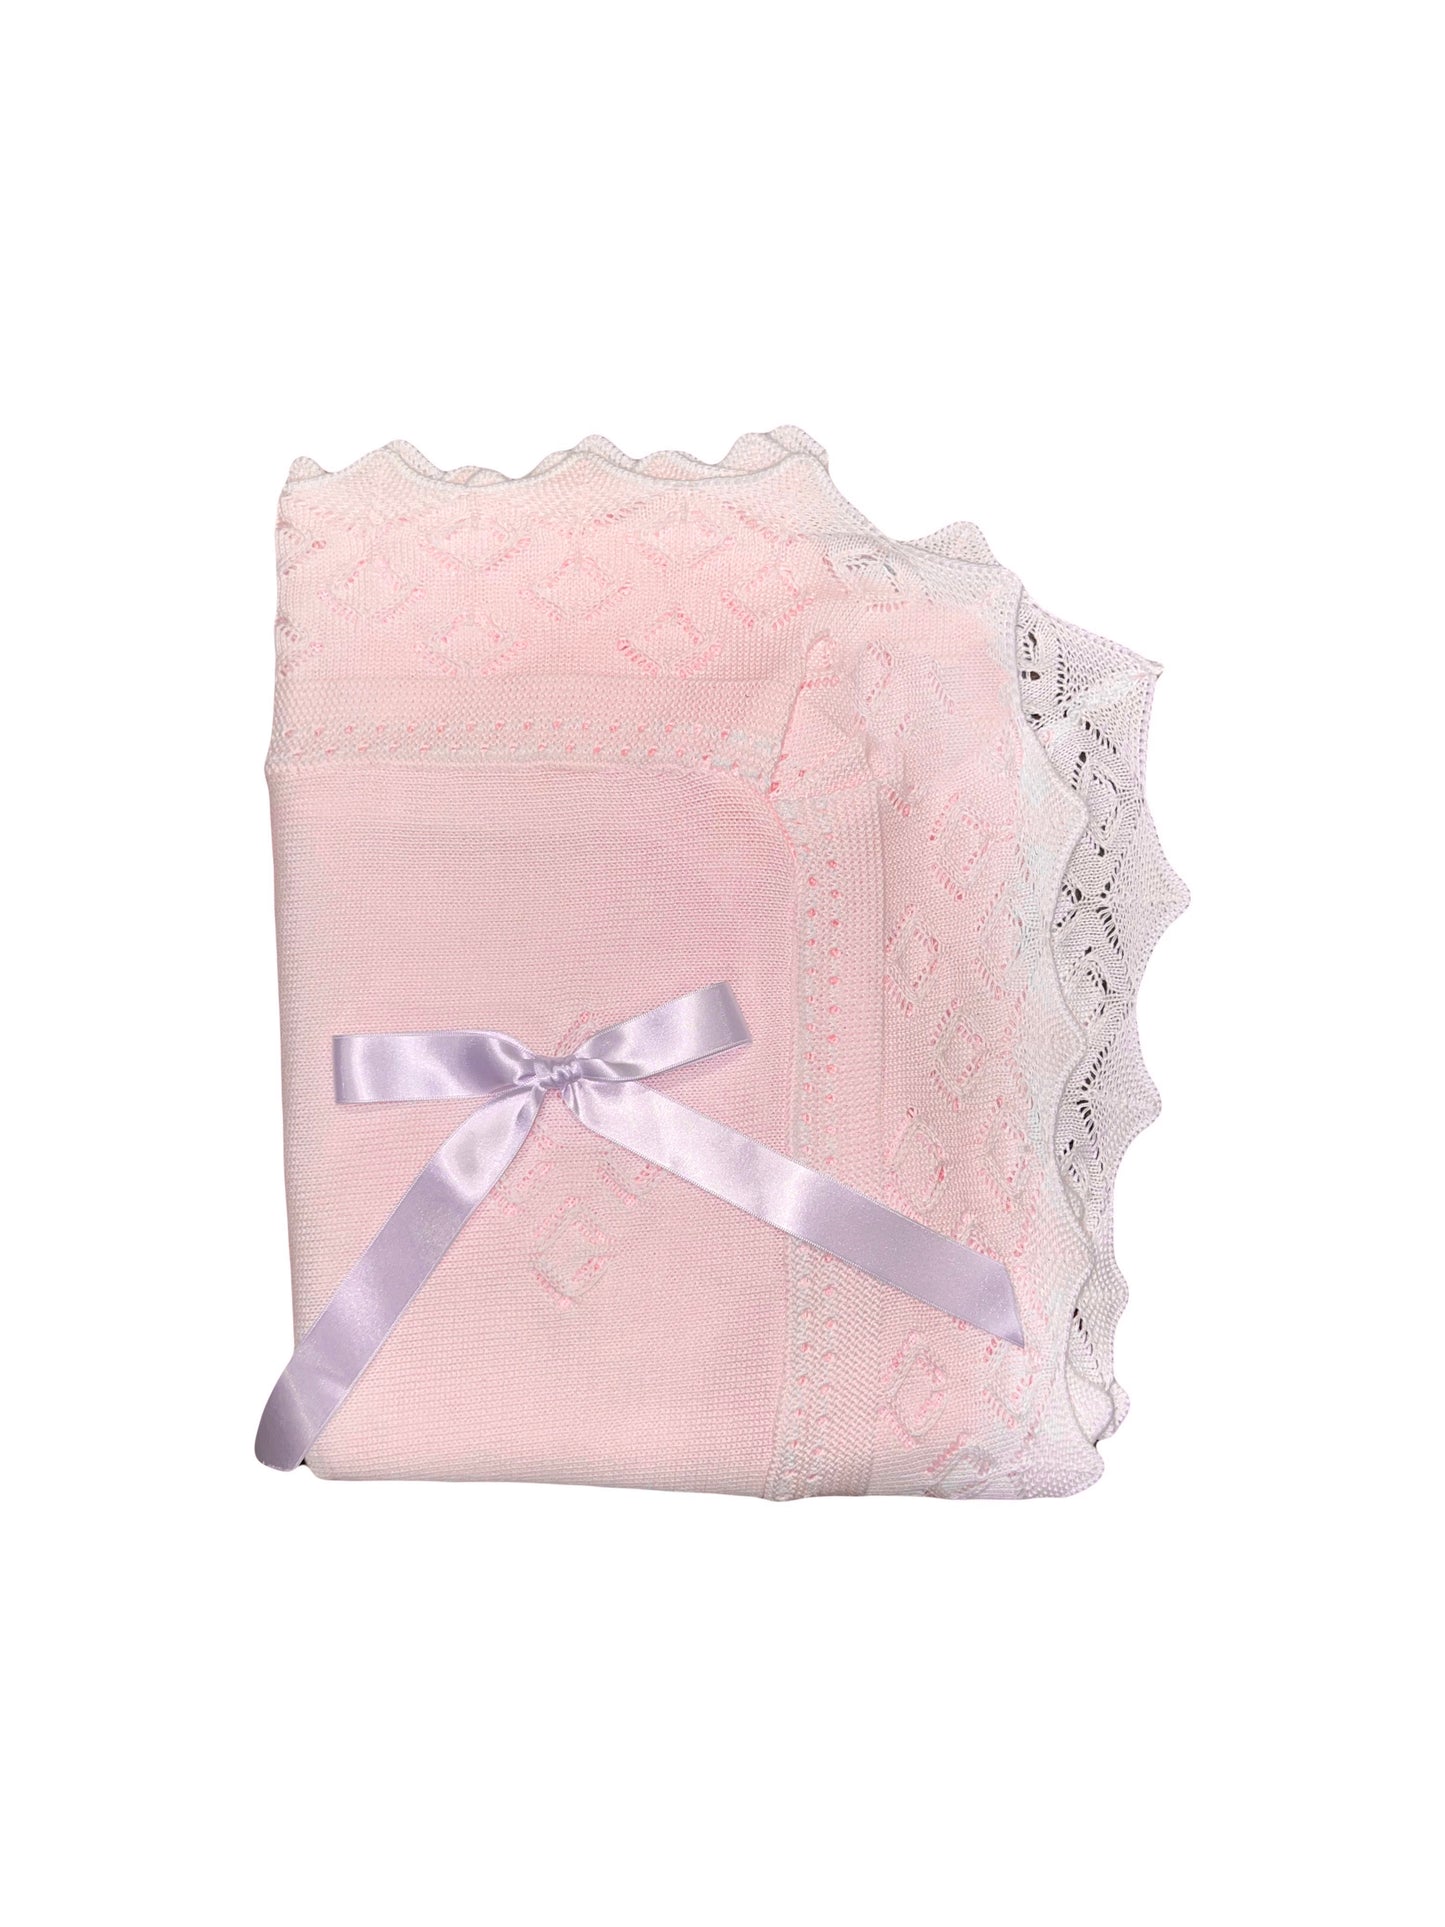 Light Pink/White Knit Blanket